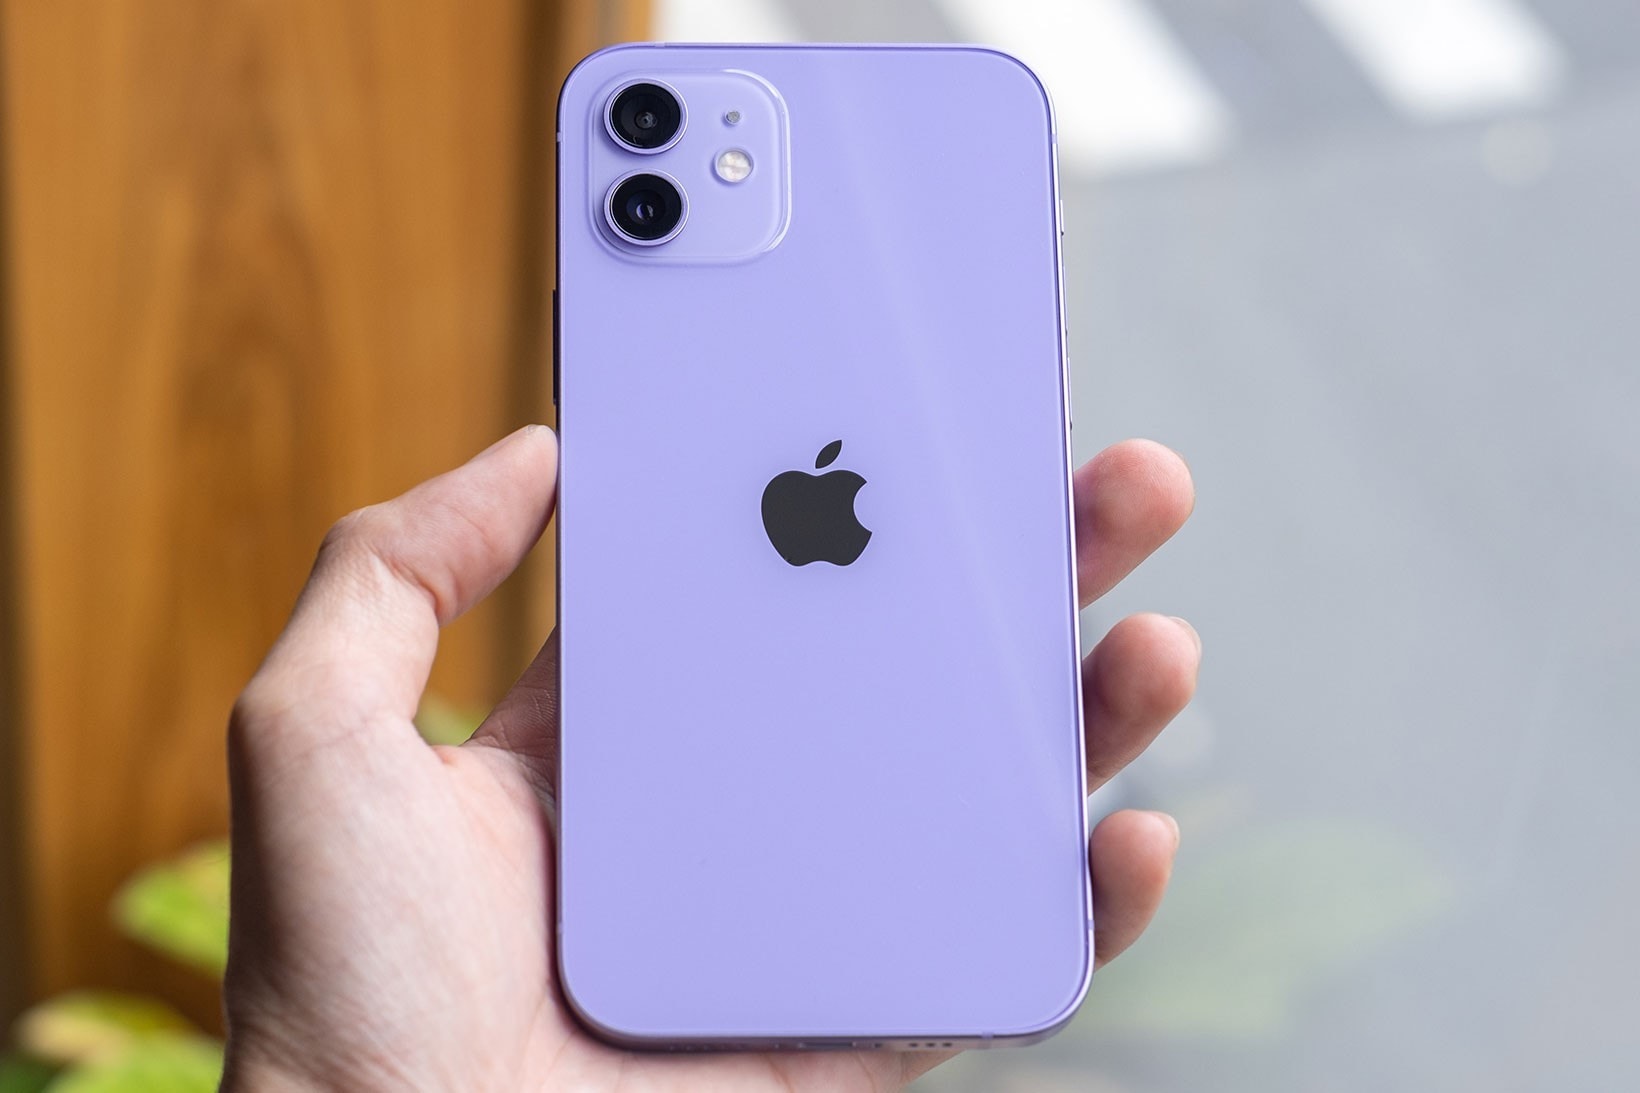 Purple iPhone purple iPhone purple iPhone purple iPhone purple iPhone